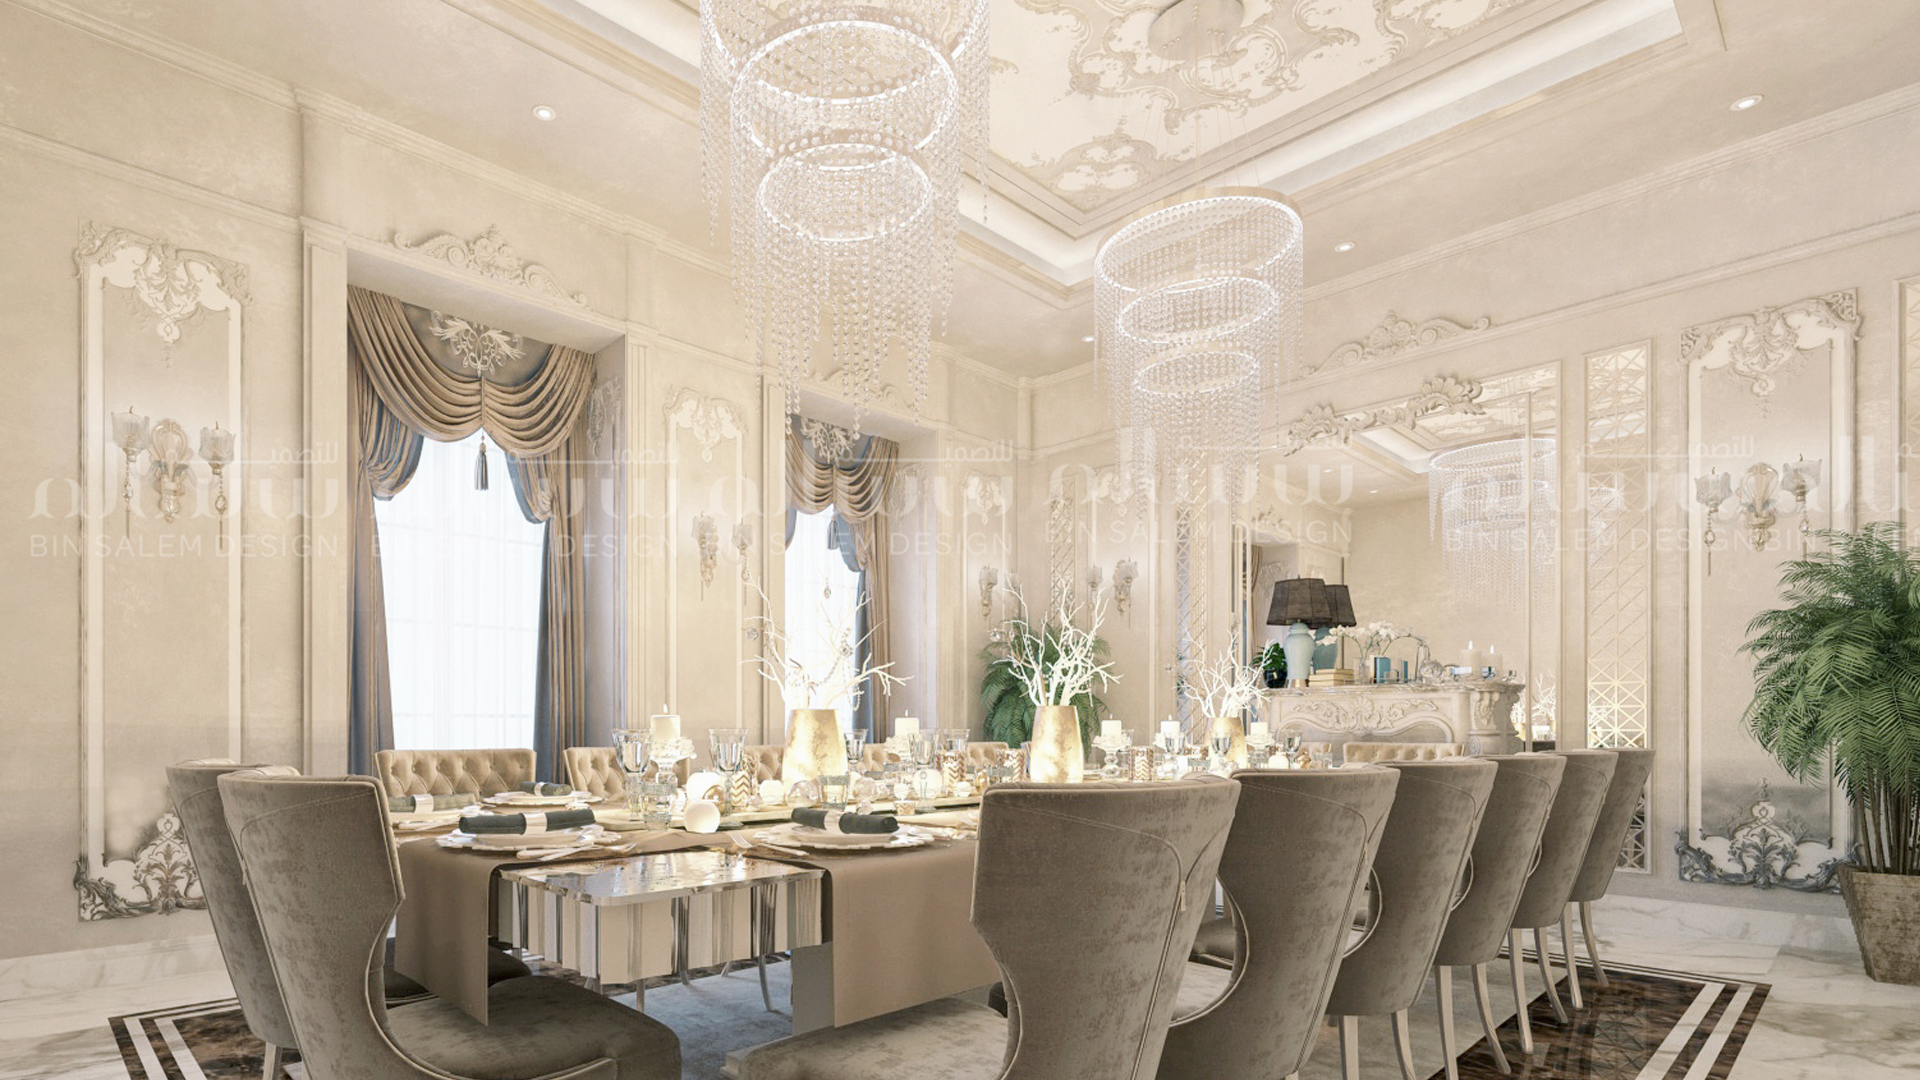 Dining Room Interior Design in Dubai, Villa Dining Room Design ...